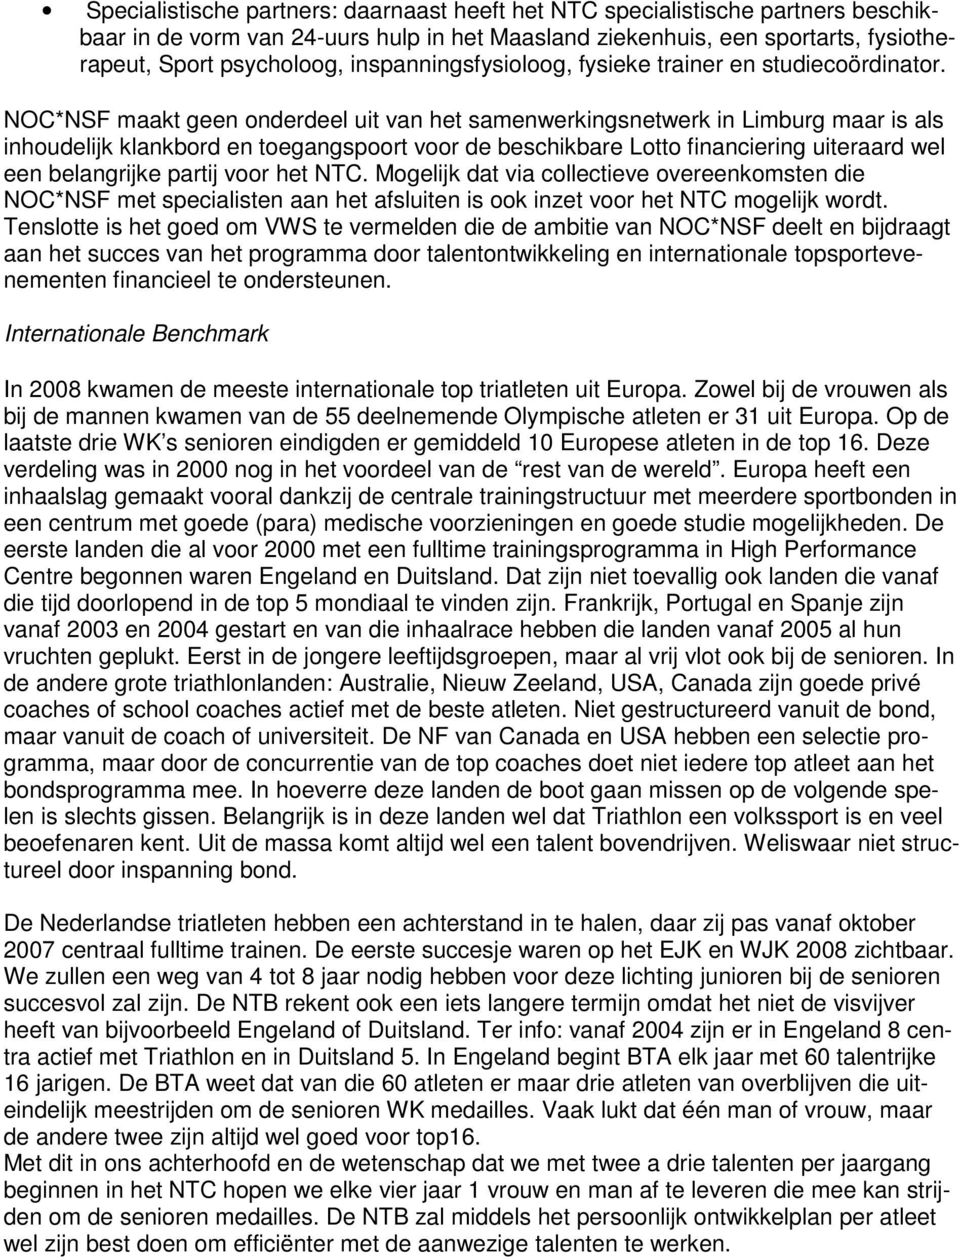 NOC*NSF maakt geen onderdeel uit van het samenwerkingsnetwerk in Limburg maar is als inhoudelijk klankbord en toegangspoort voor de beschikbare Lotto financiering uiteraard wel een belangrijke partij